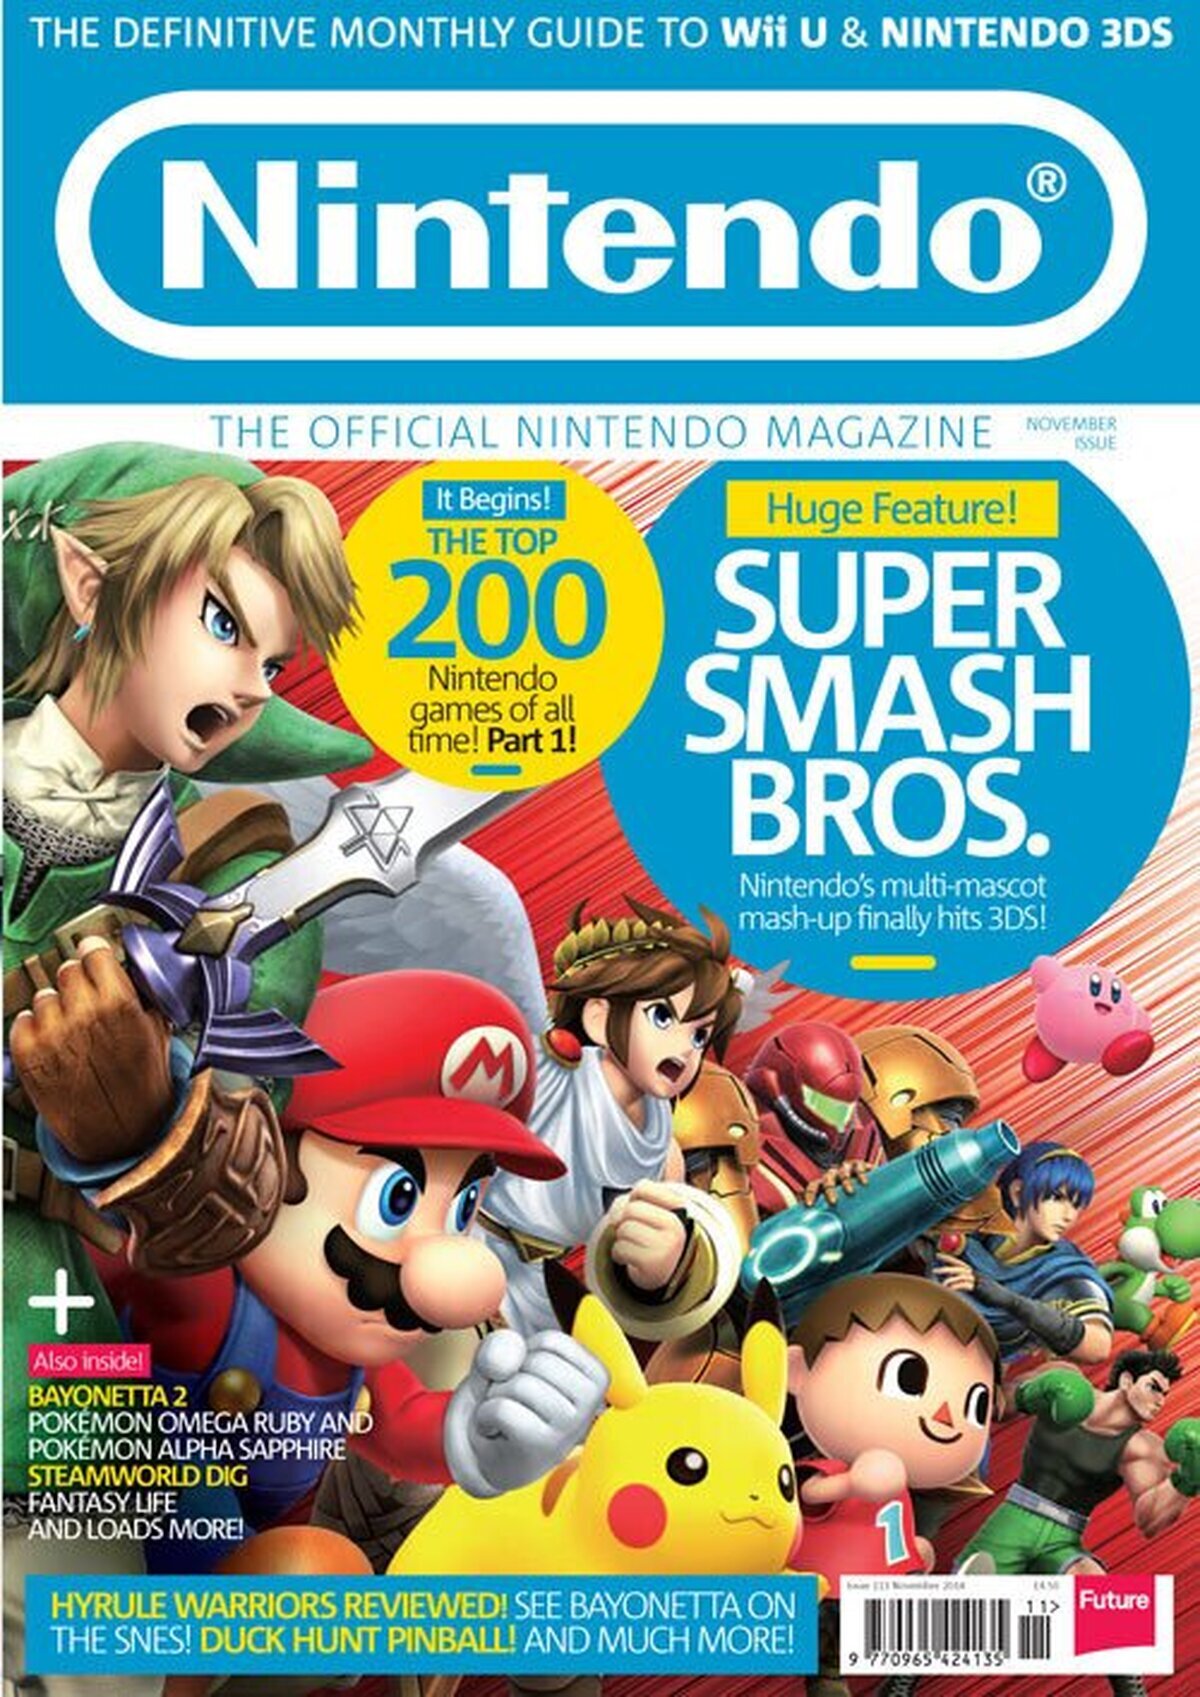 Cierra la Revista Oficial Nintendo en el Reino Unido